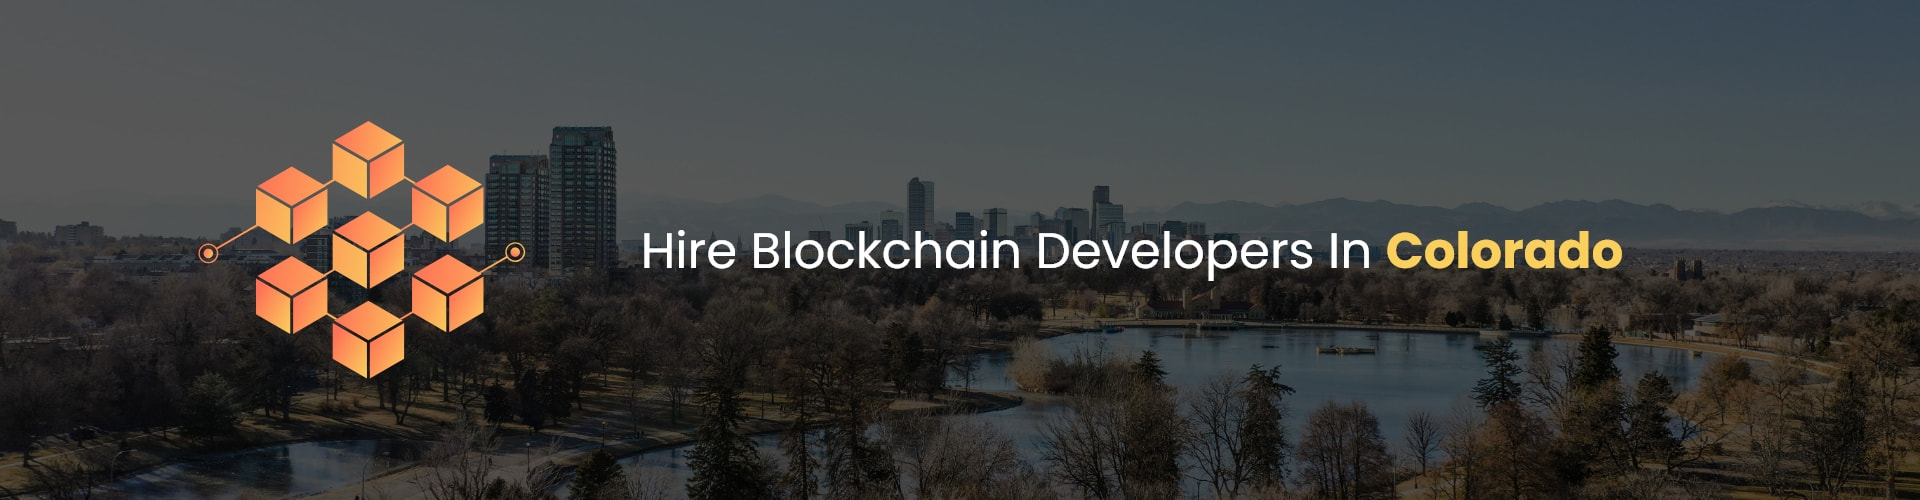 hire blockchain developers in colorado